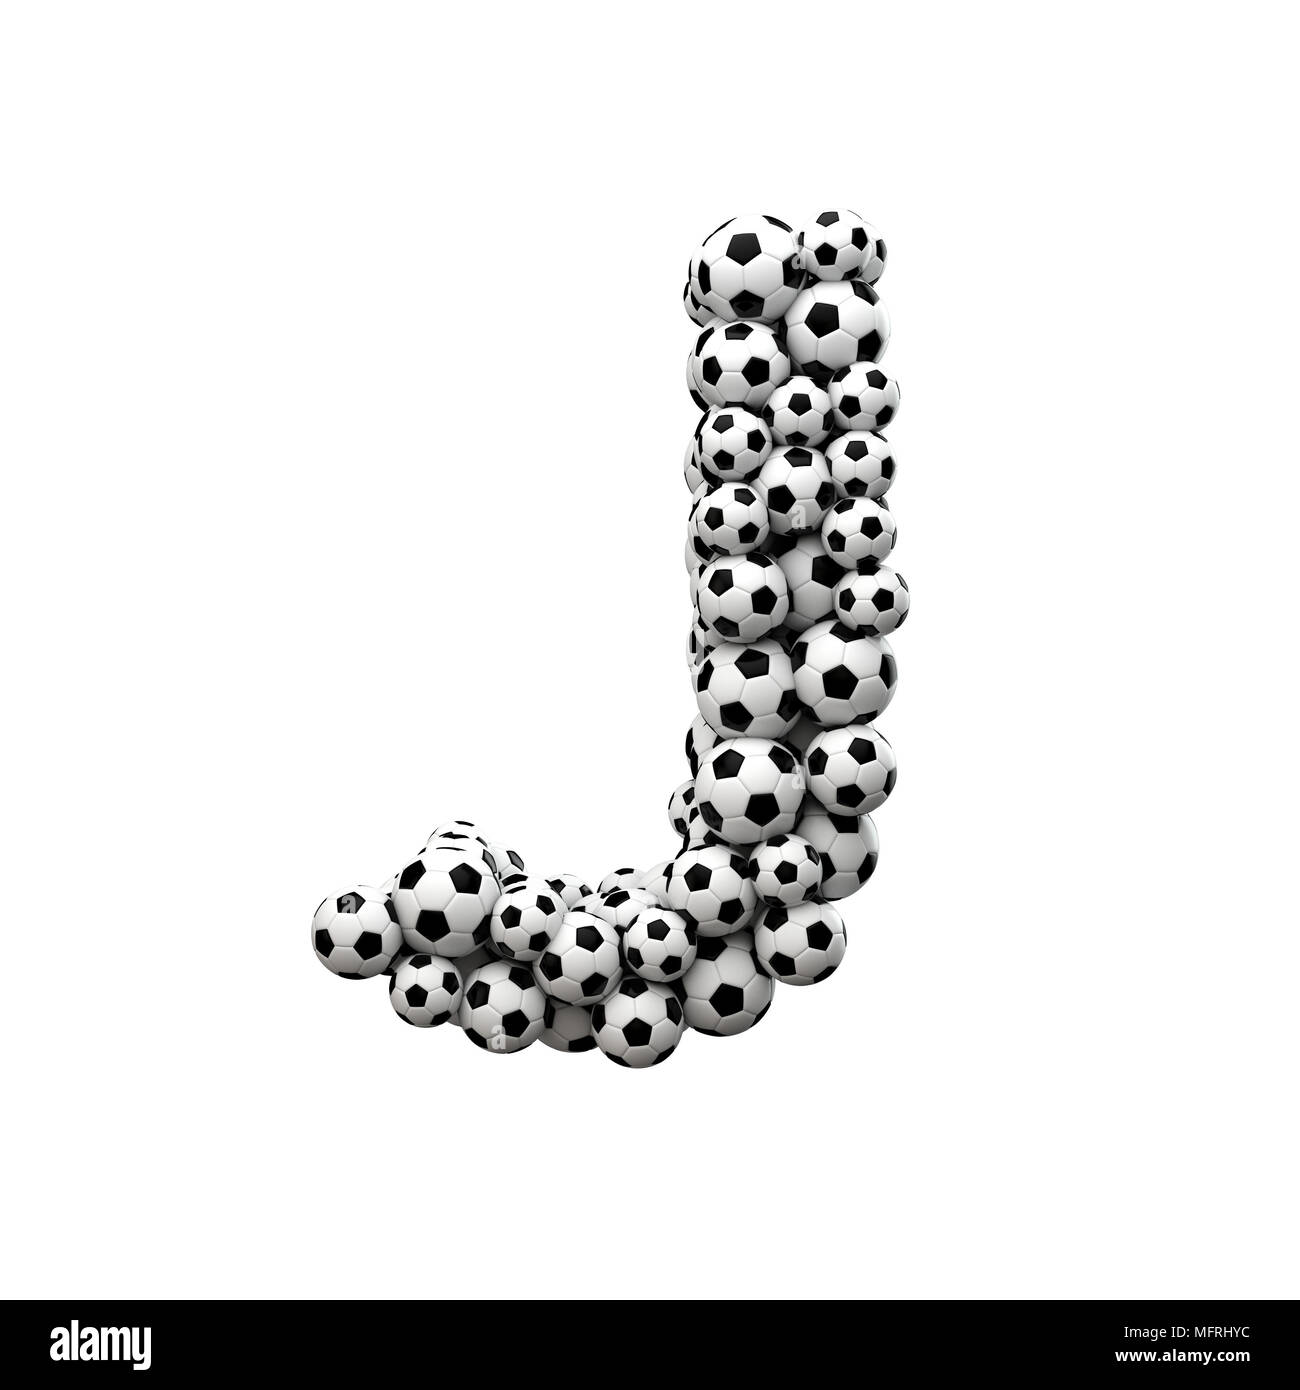 Letra mayúscula J font hechas a partir de una colección de balones de fútbol. 3D Rendering Foto de stock